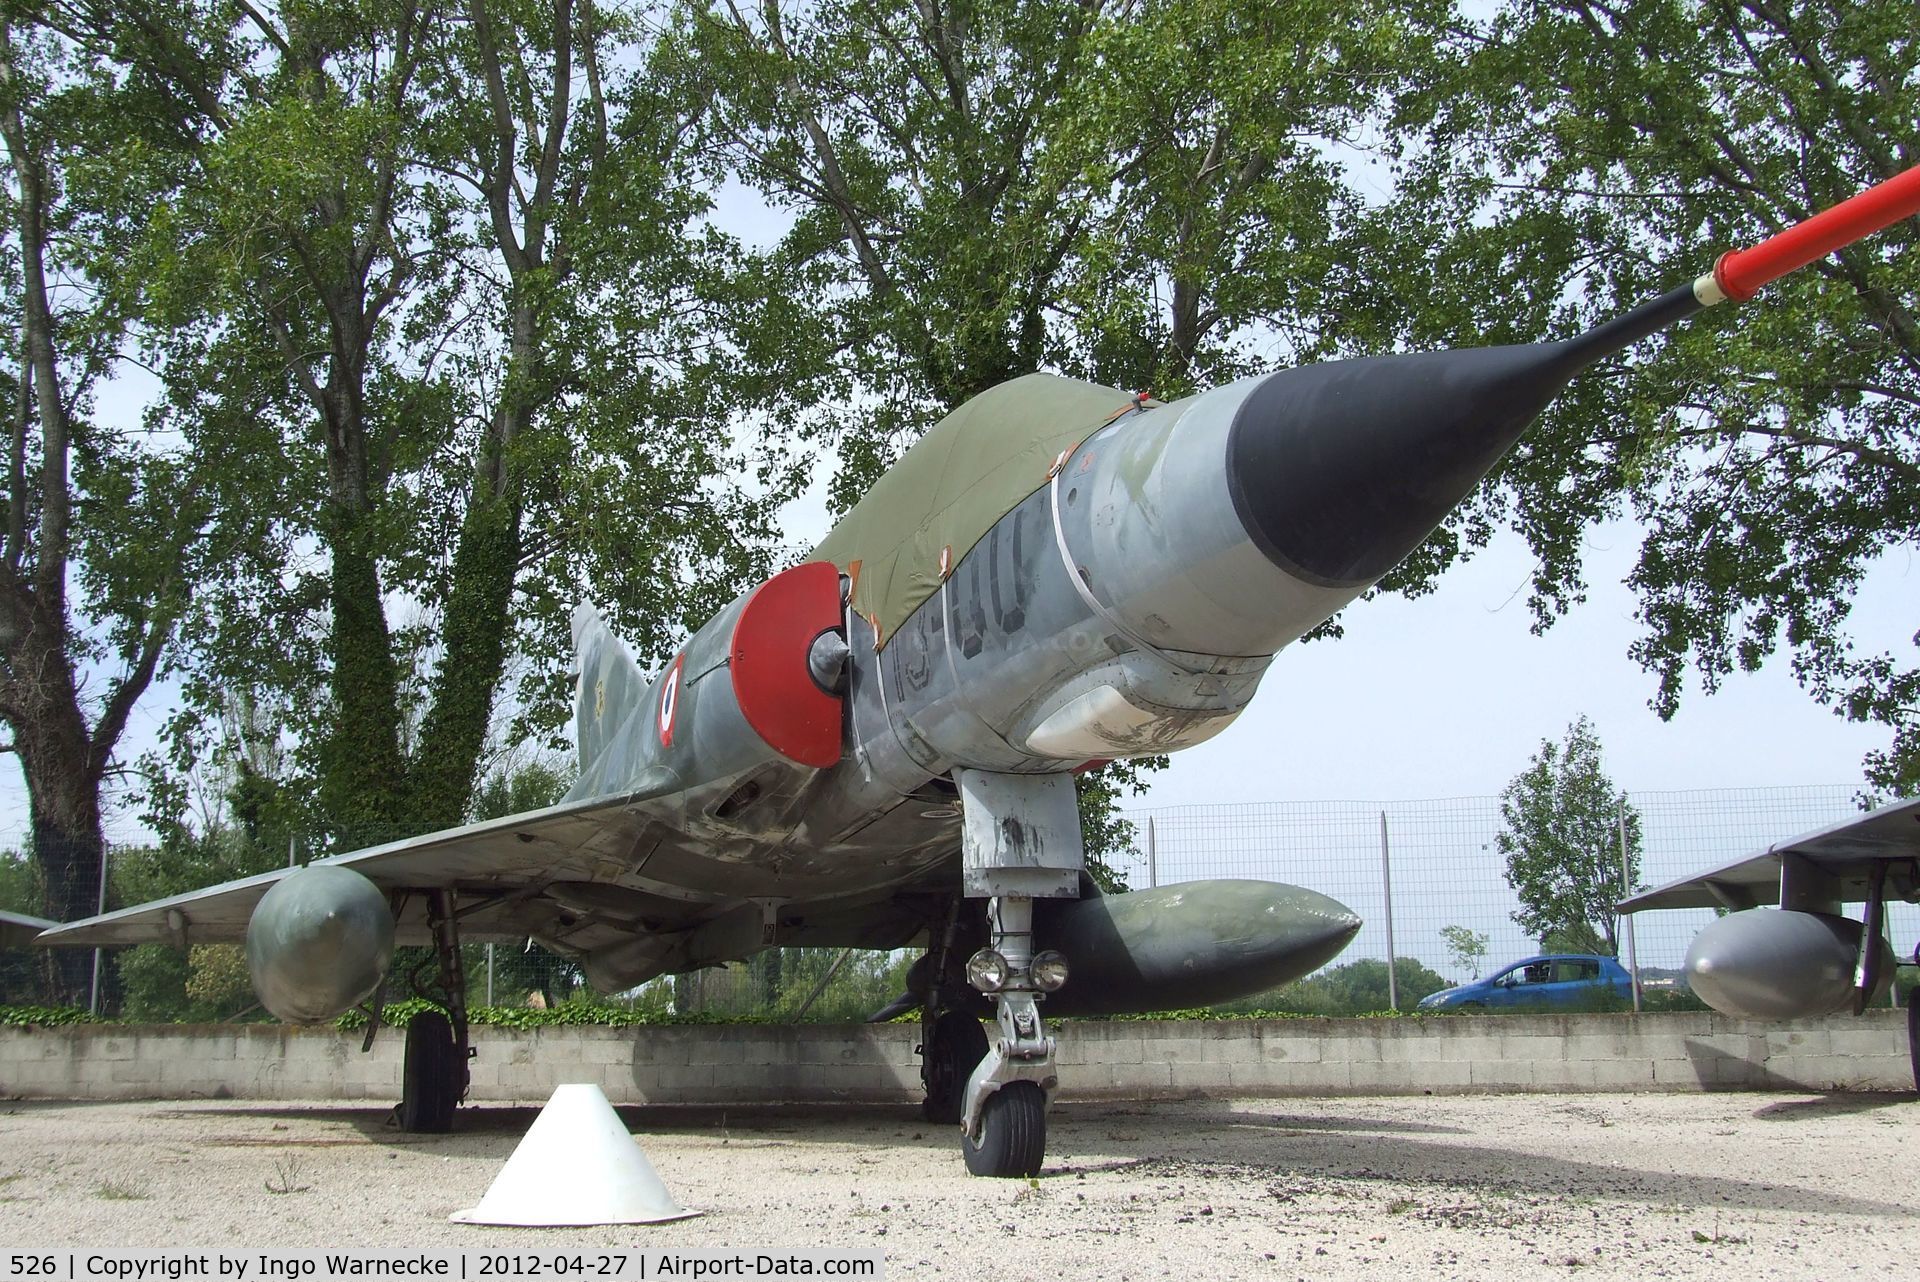 526, Dassault Mirage IIIE C/N 526, Dassault Mirage III E at the Musee Aeronautique, Orange